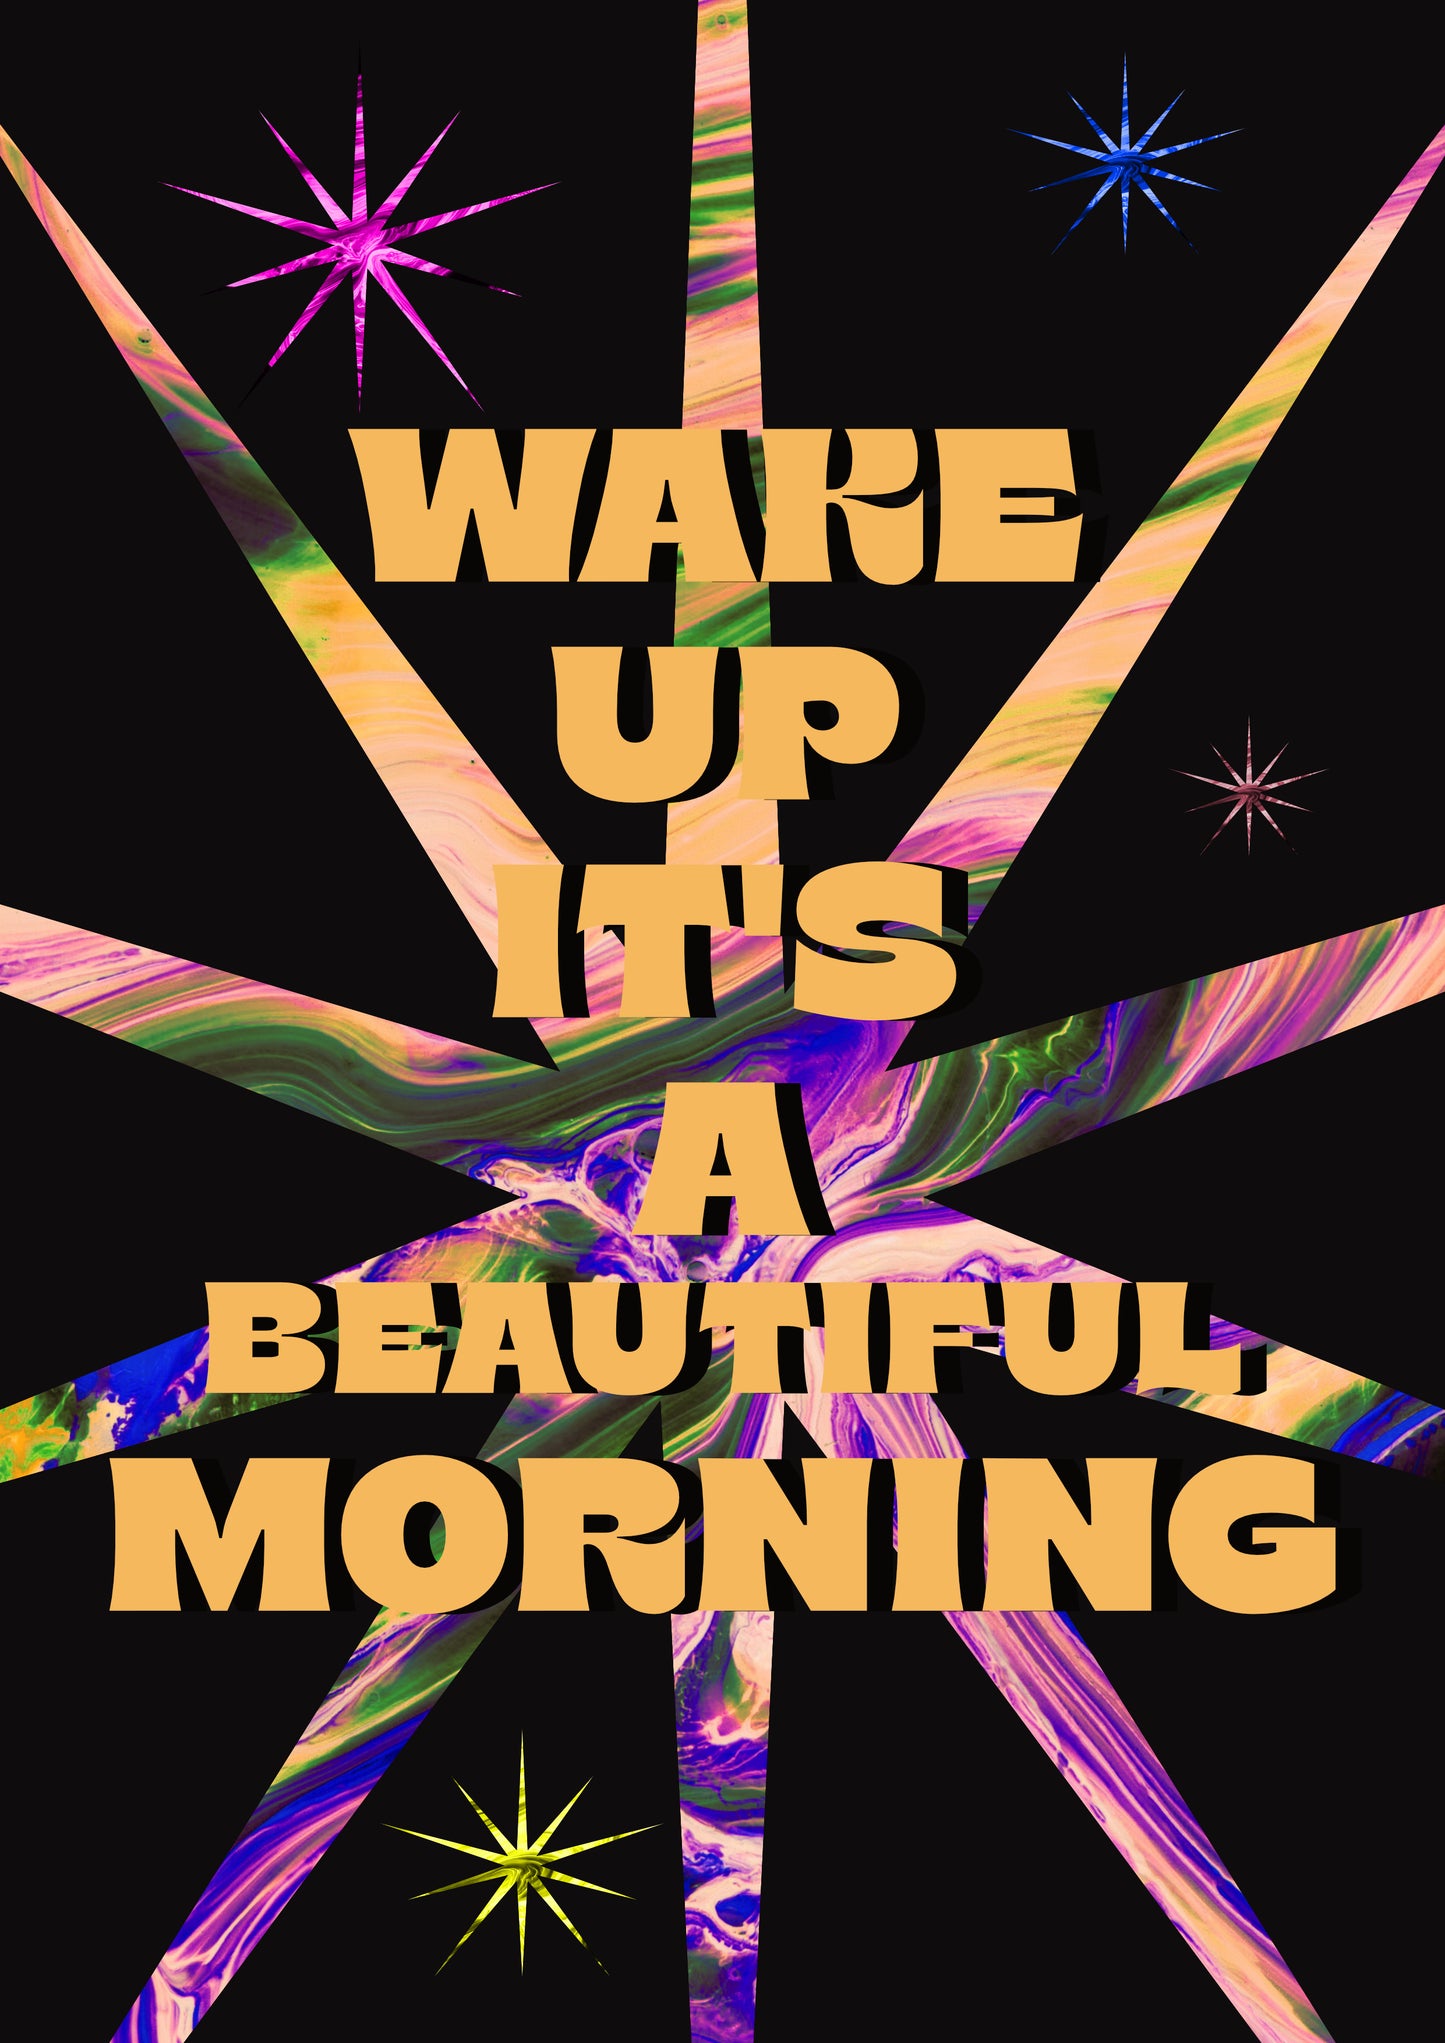 WAKE UP IT'S A BEAUTIFUL MORNING